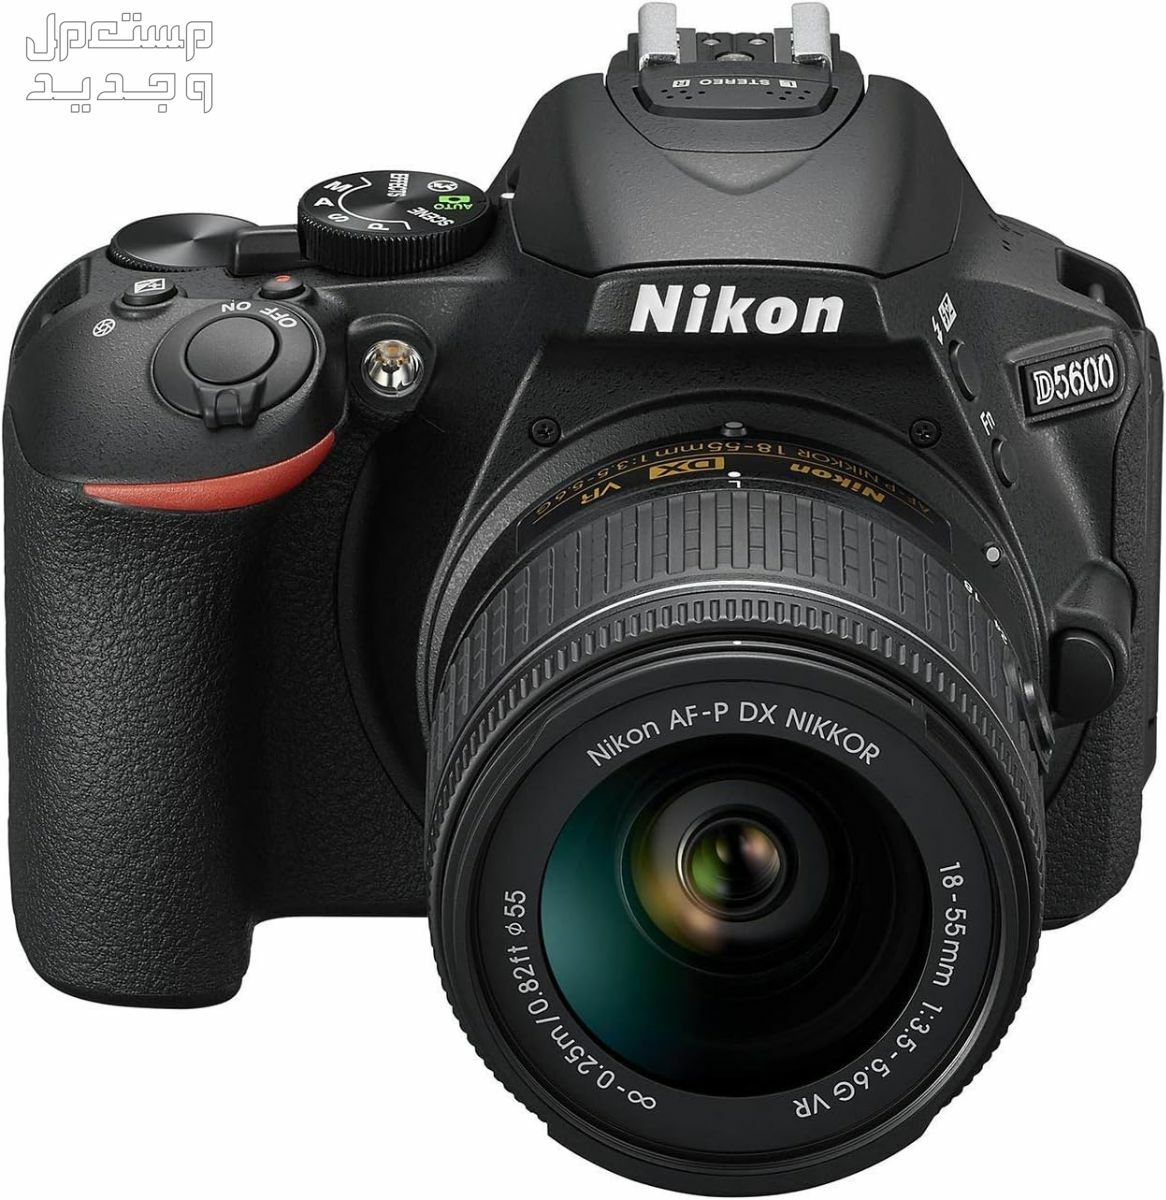 10 كاميرات تصوير ماركات عالمية بأسعار رخيصة في الكويت سعر كاميرا Nikon D5600